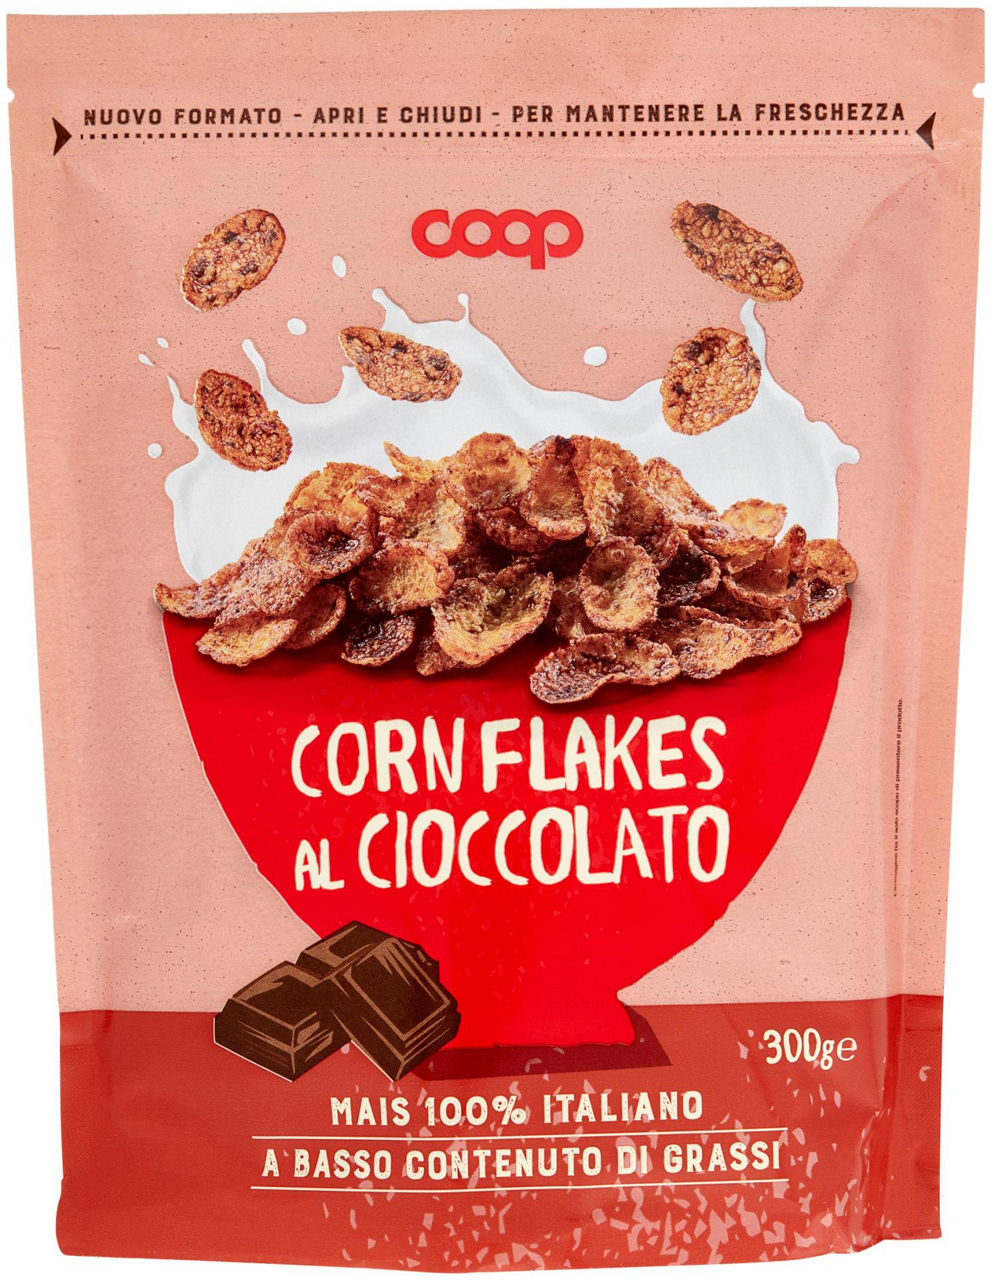 Corn flakes al cioccolato coop doypack g 300